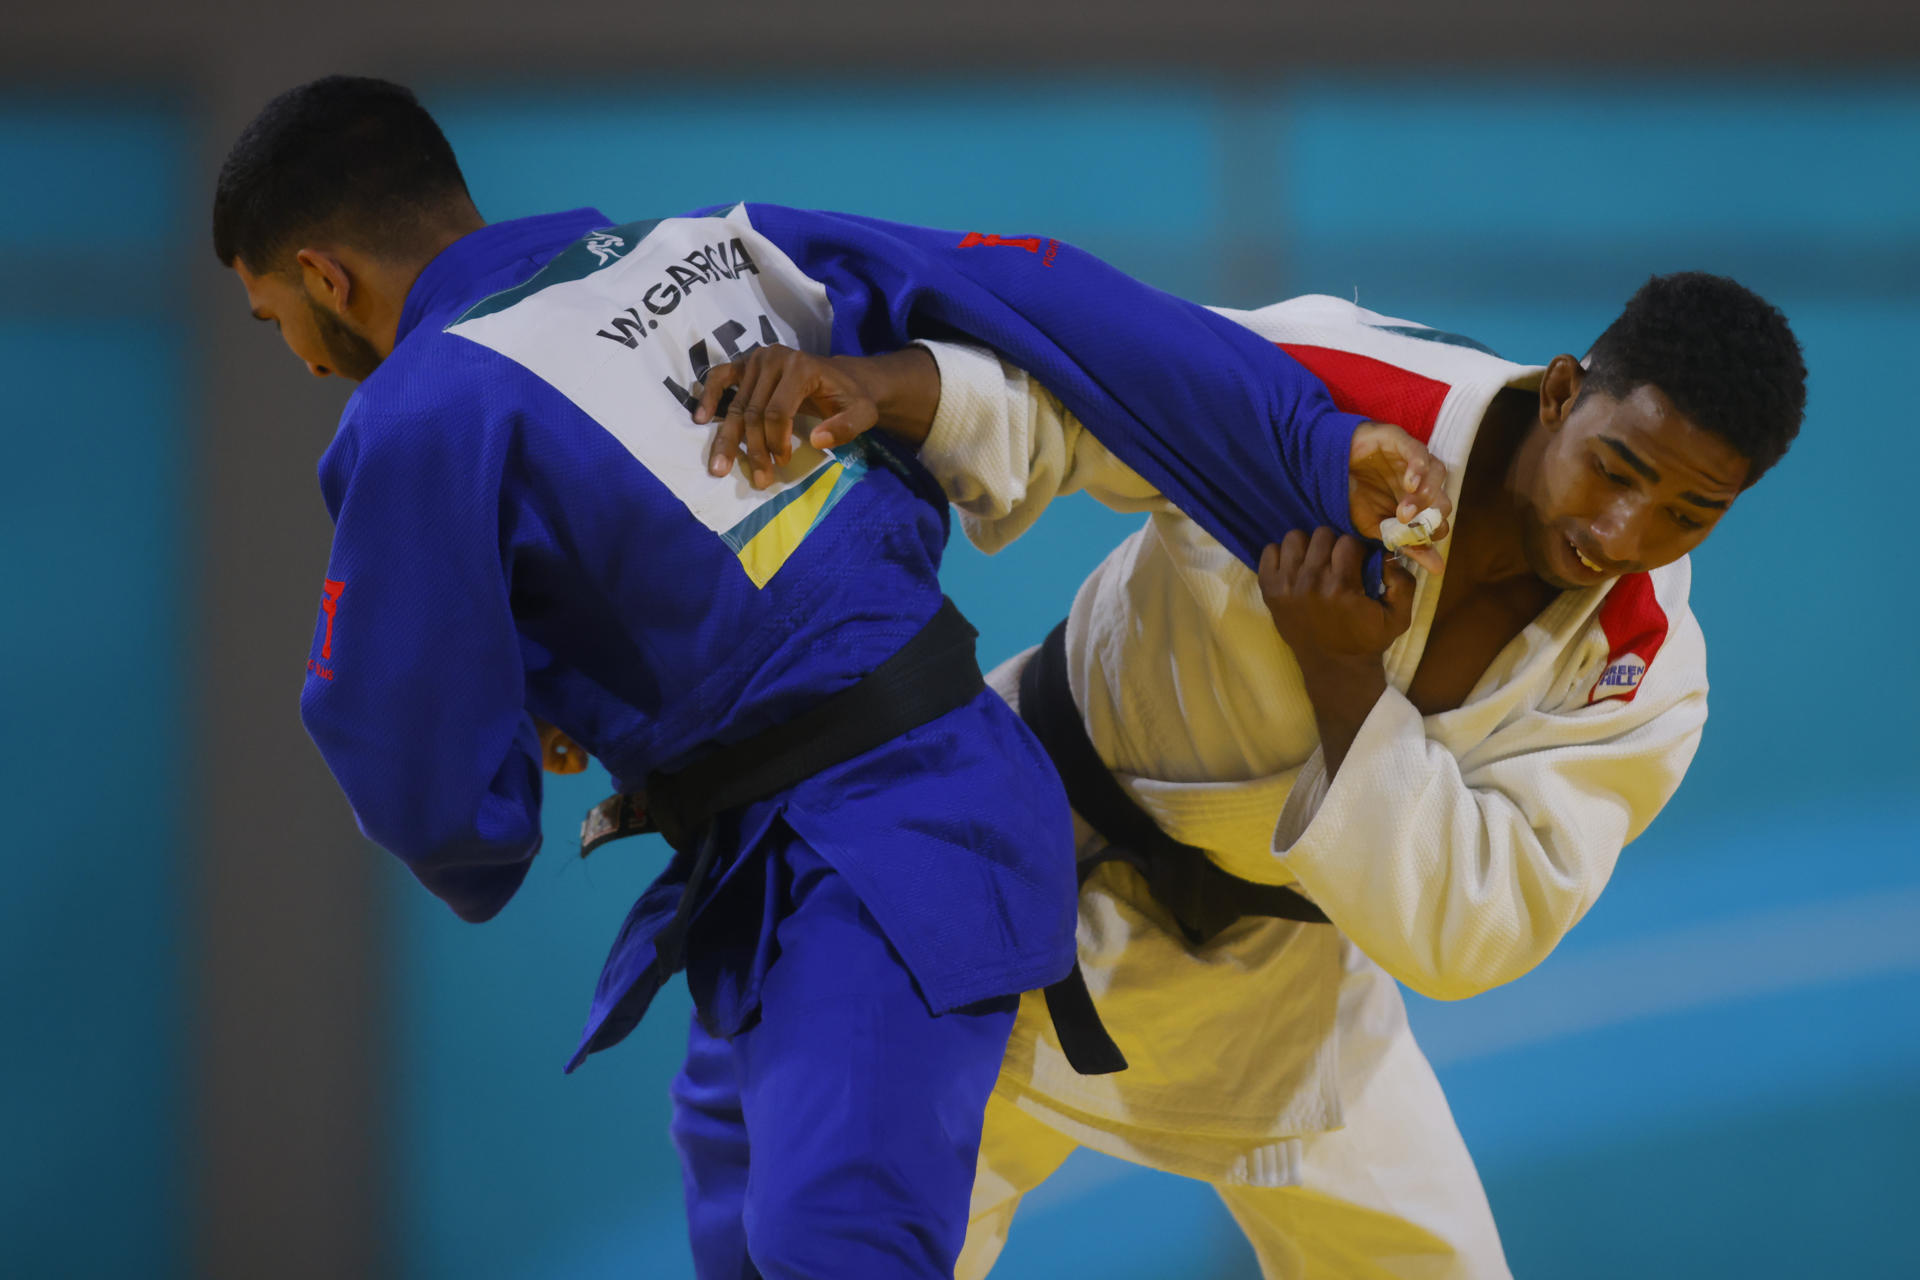 “Dominé y logré marcar”, judoca Willis García, primer venezolano en ganar oro en Juegos Panamericanos (VIDEO)